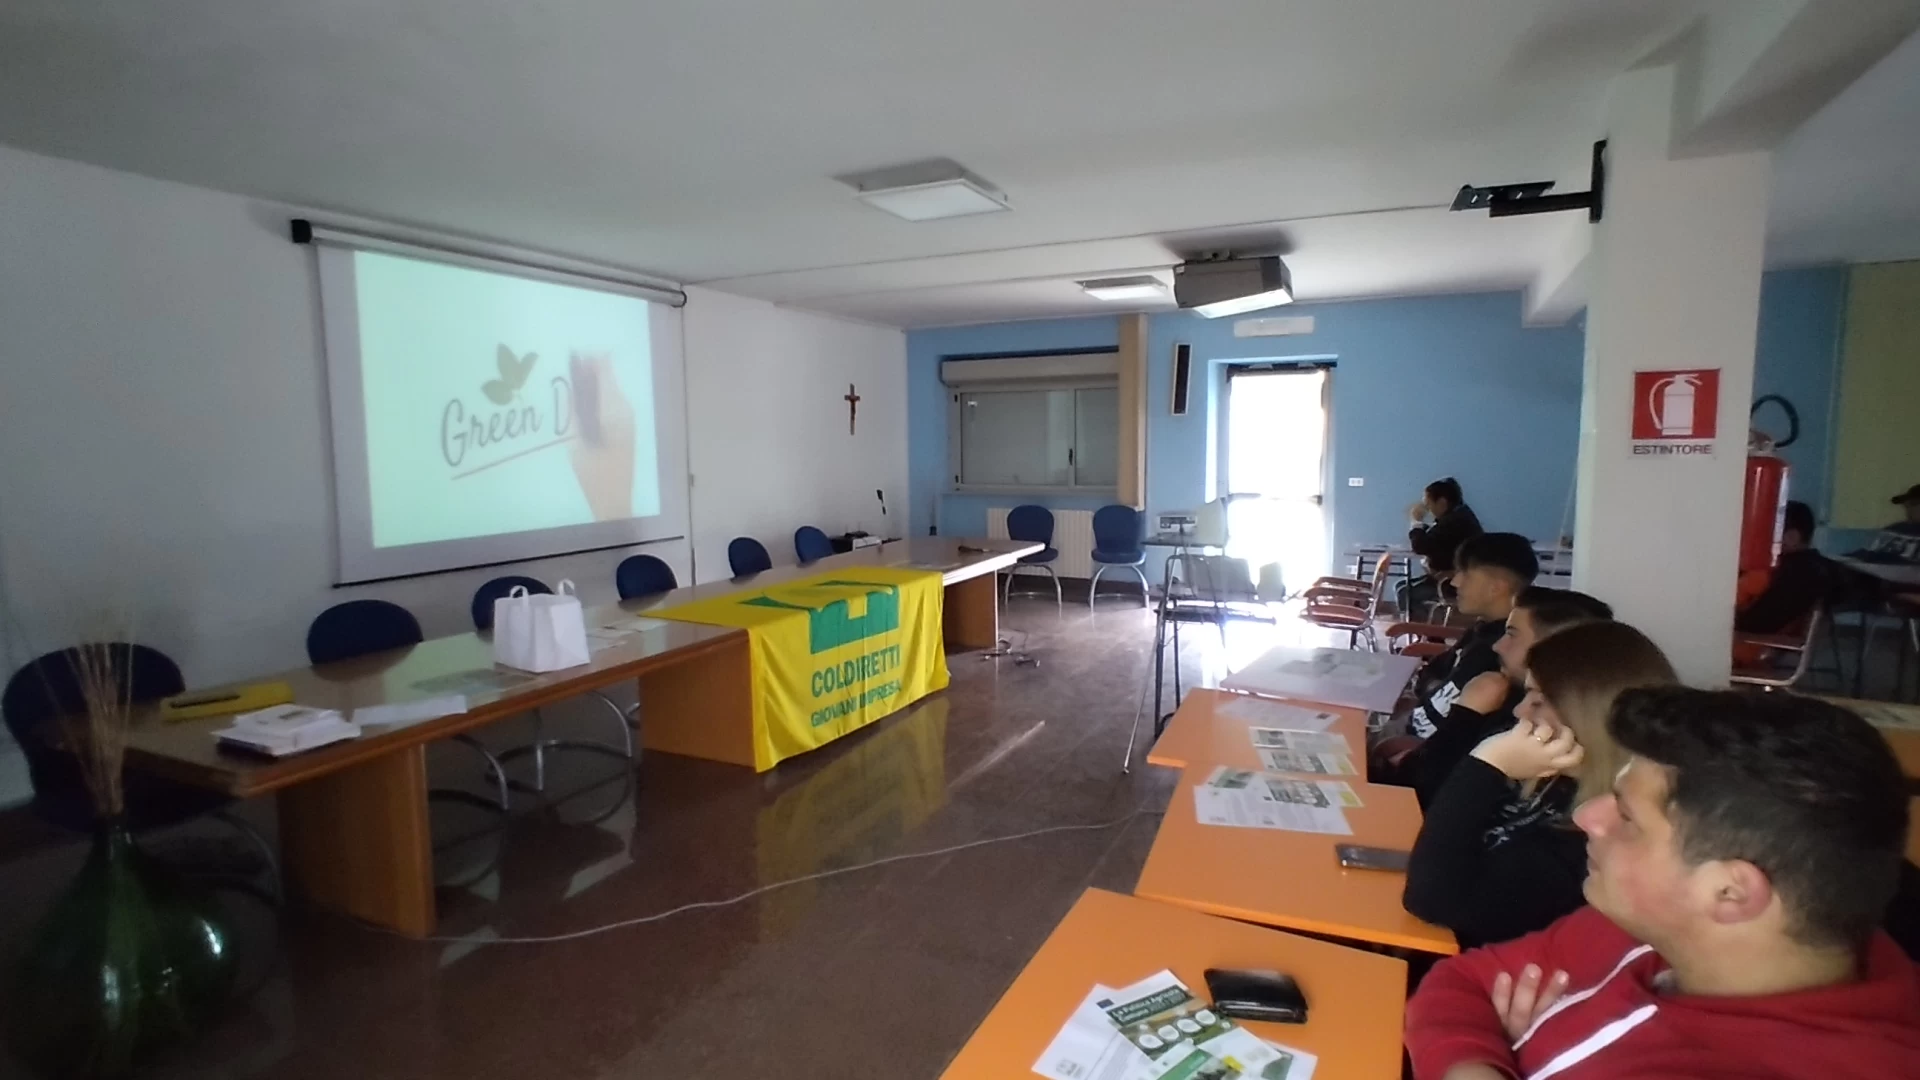 La Pac entra in classe. Coldiretti Molise incontra i giovani studenti dell'Istituto Agrario di Campobasso.